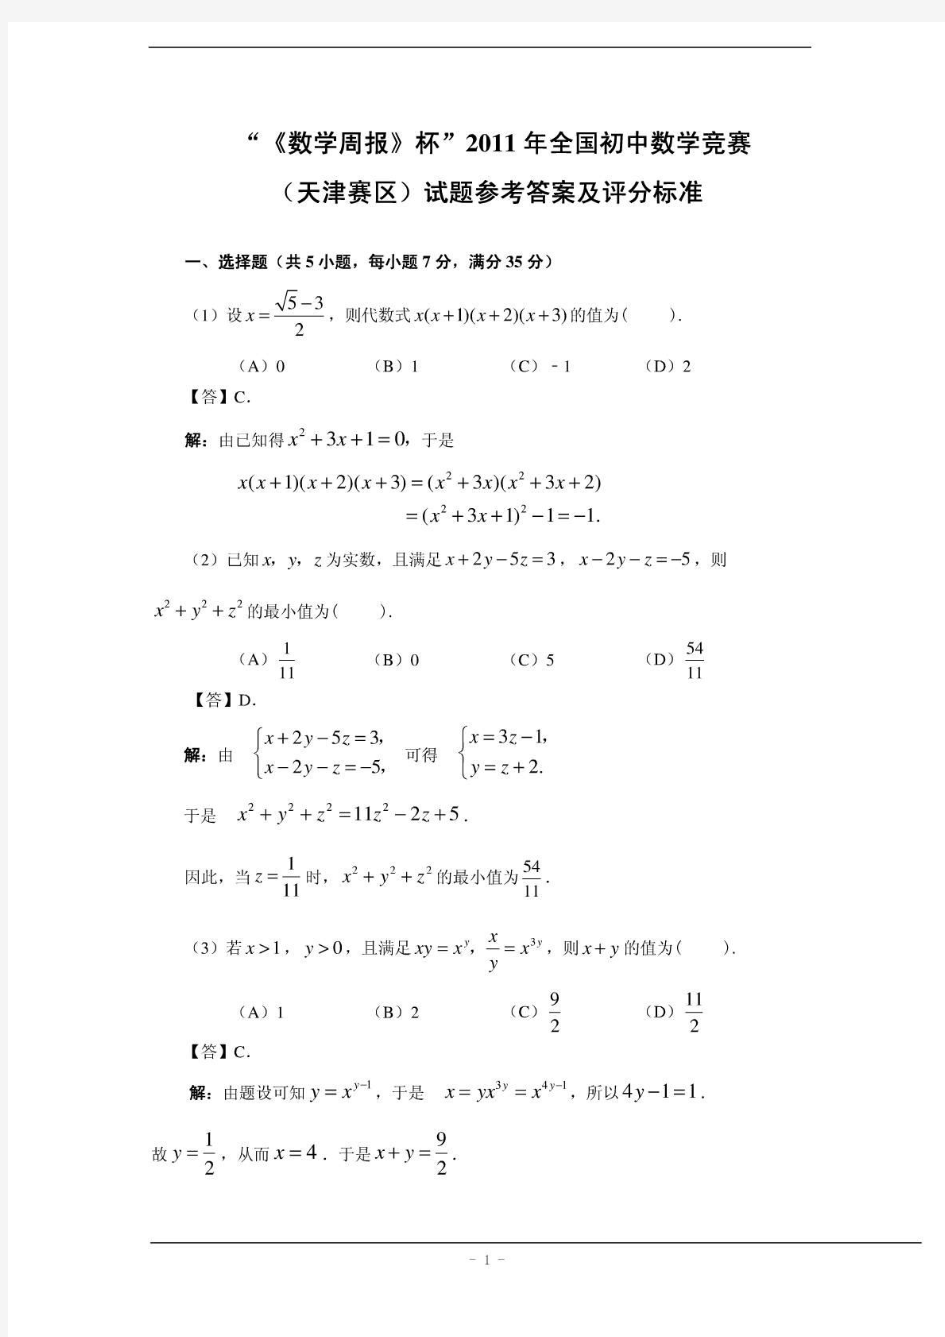 全国初中数学竞赛天津赛区复赛试题(含答案)